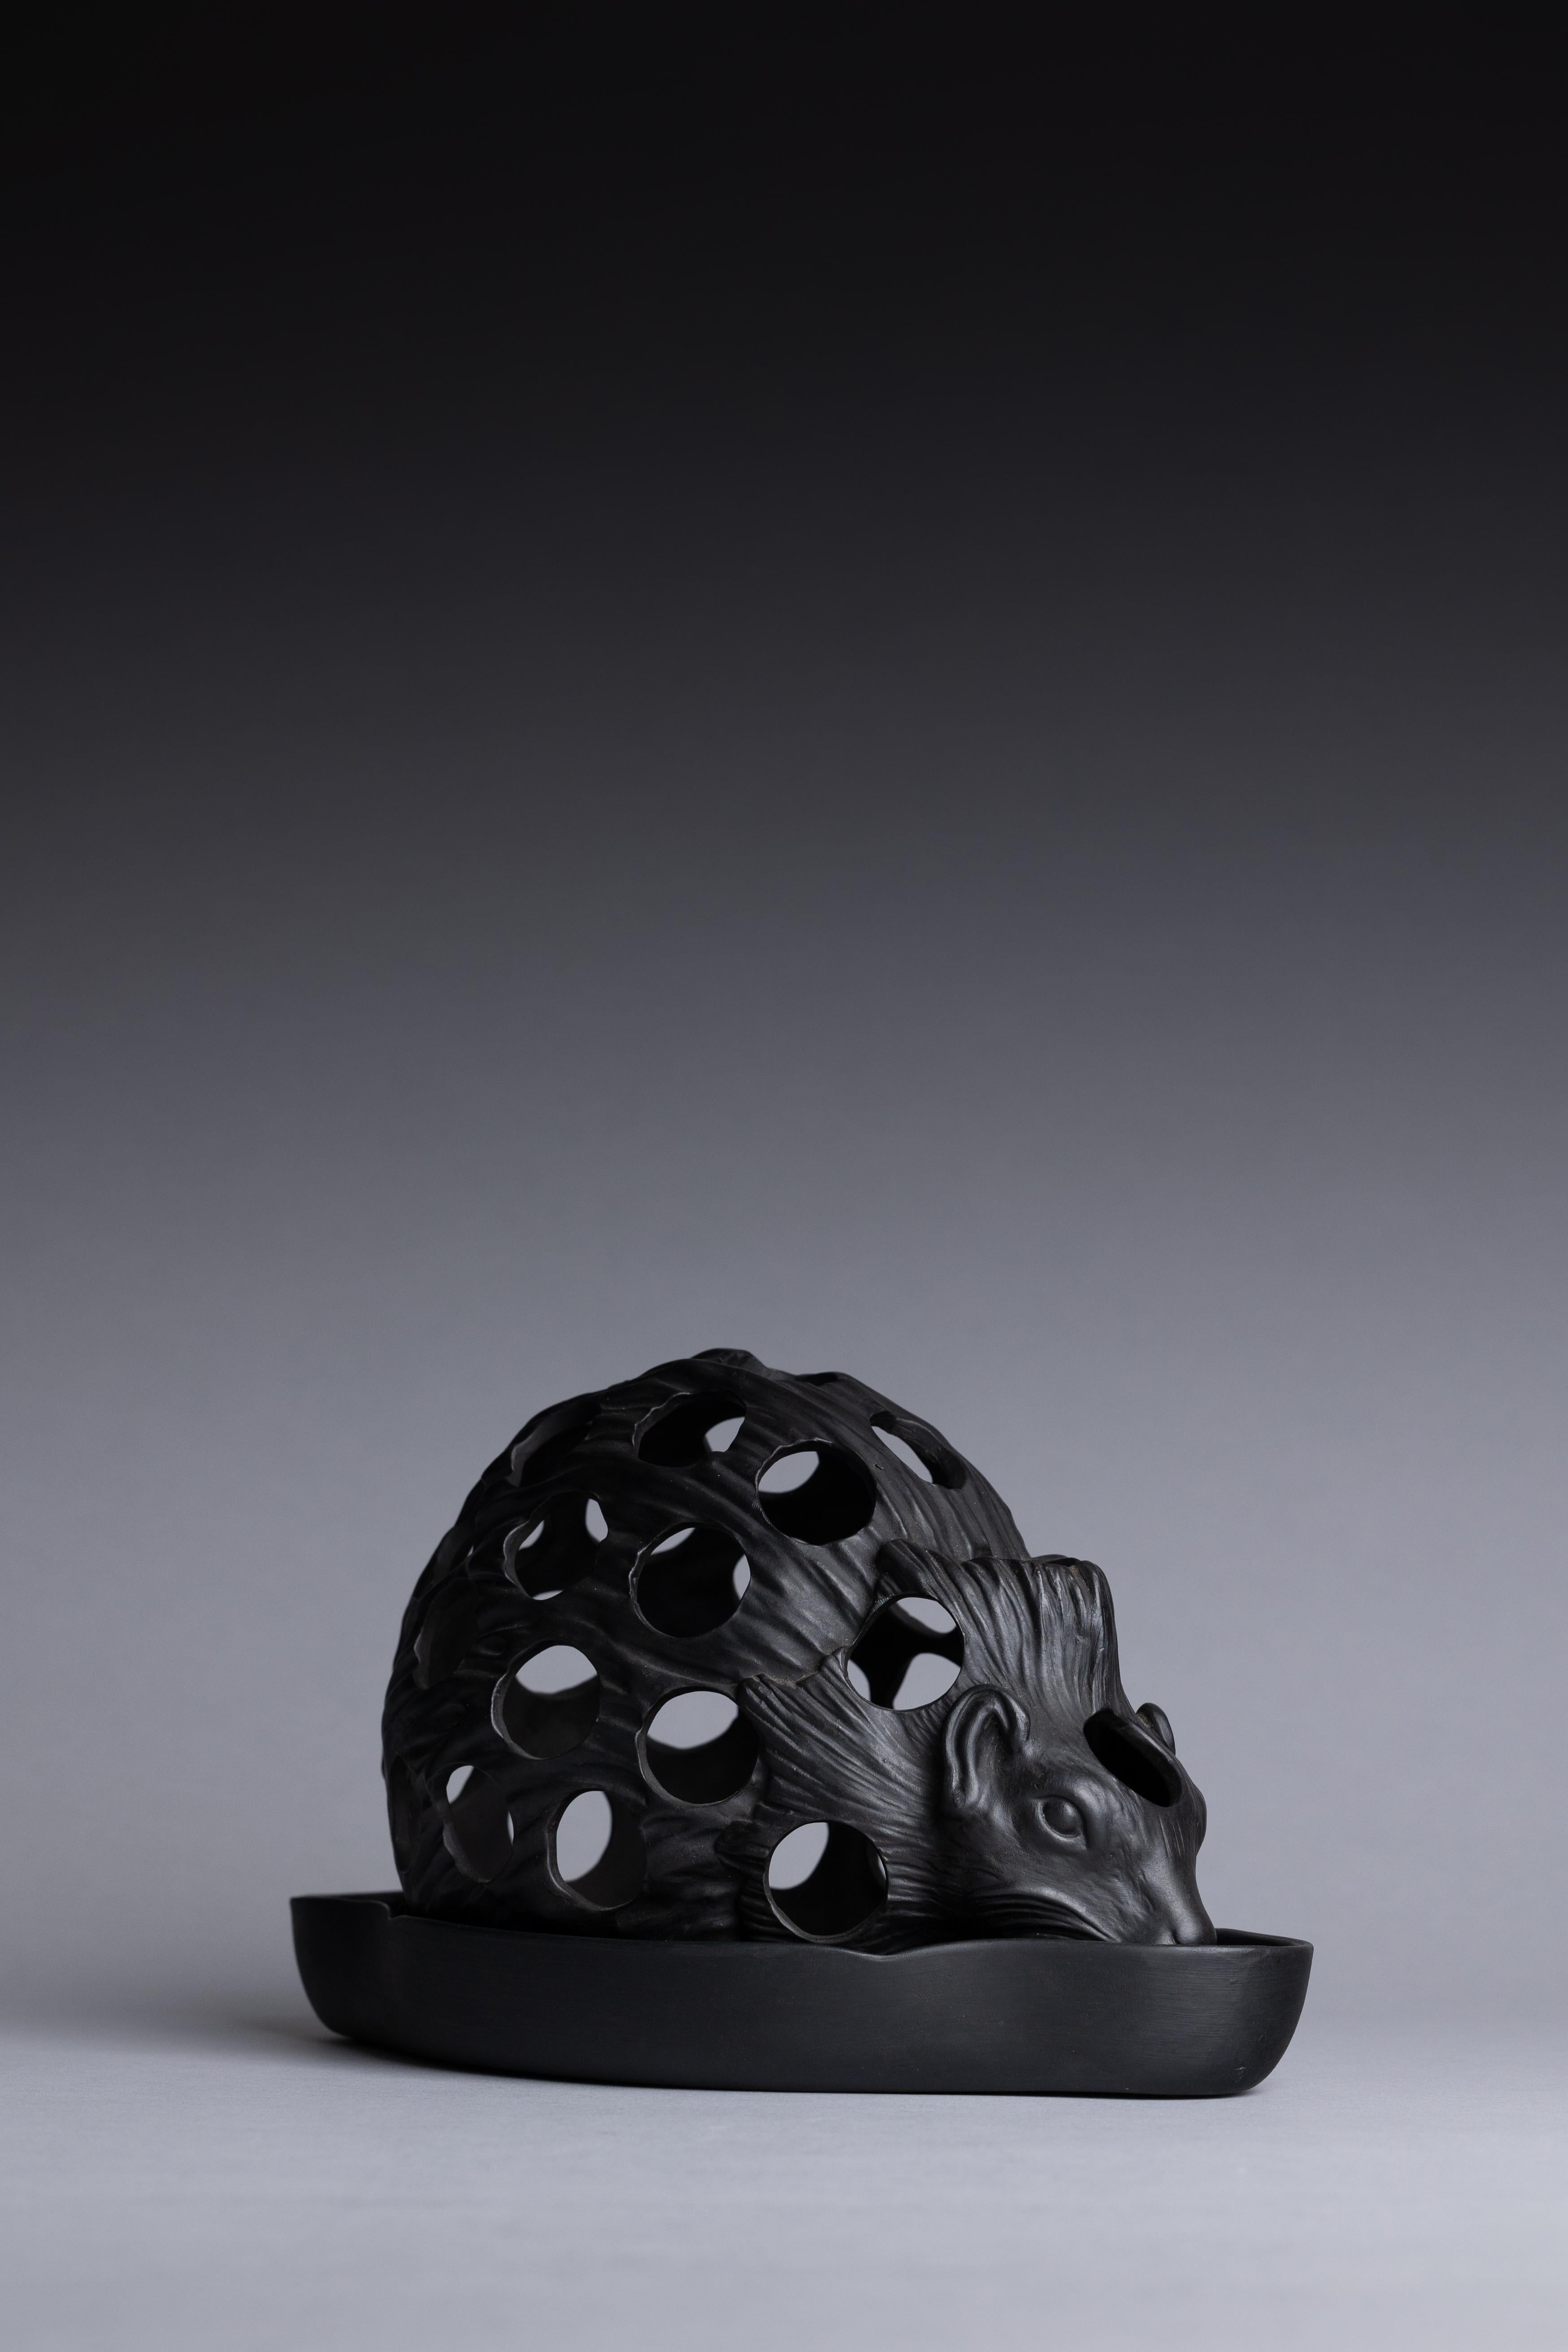 Un pot à bulbe en basalte noir moulé en forme de hérisson, fabriqué par Wedgwood au milieu du 19e siècle.

Finement moulé comme un petit hérisson plein de vie, cet objet unique aurait été utilisé pour faire germer des bulbes : le plateau inférieur